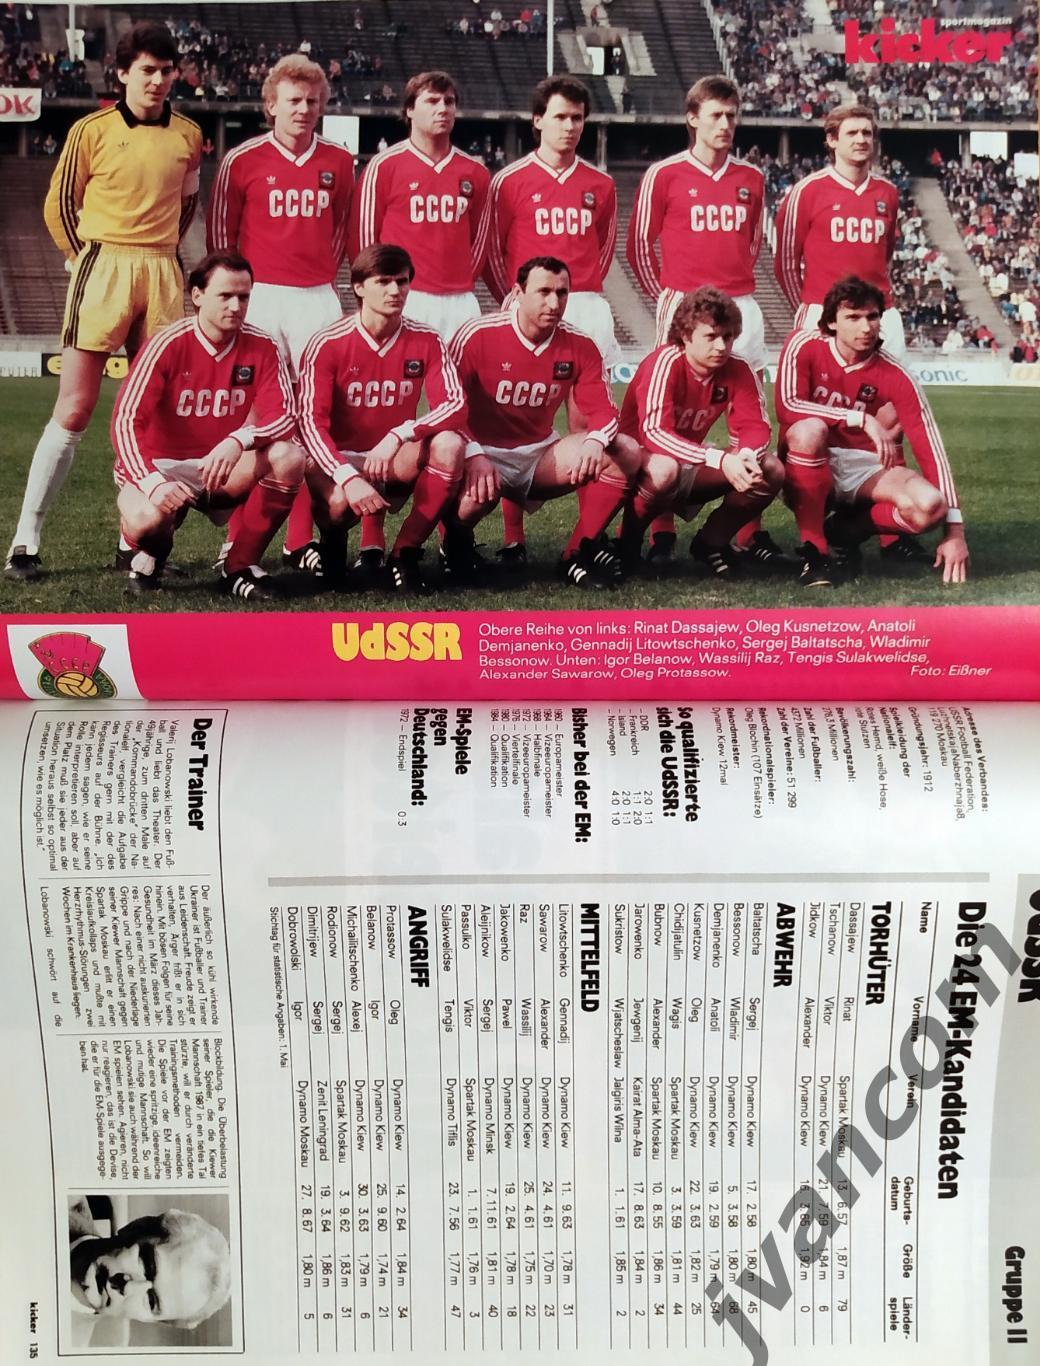 KICKER SONDERHEFT. Чемпионат Европы по футболу 1988 года. Превью участников. 4